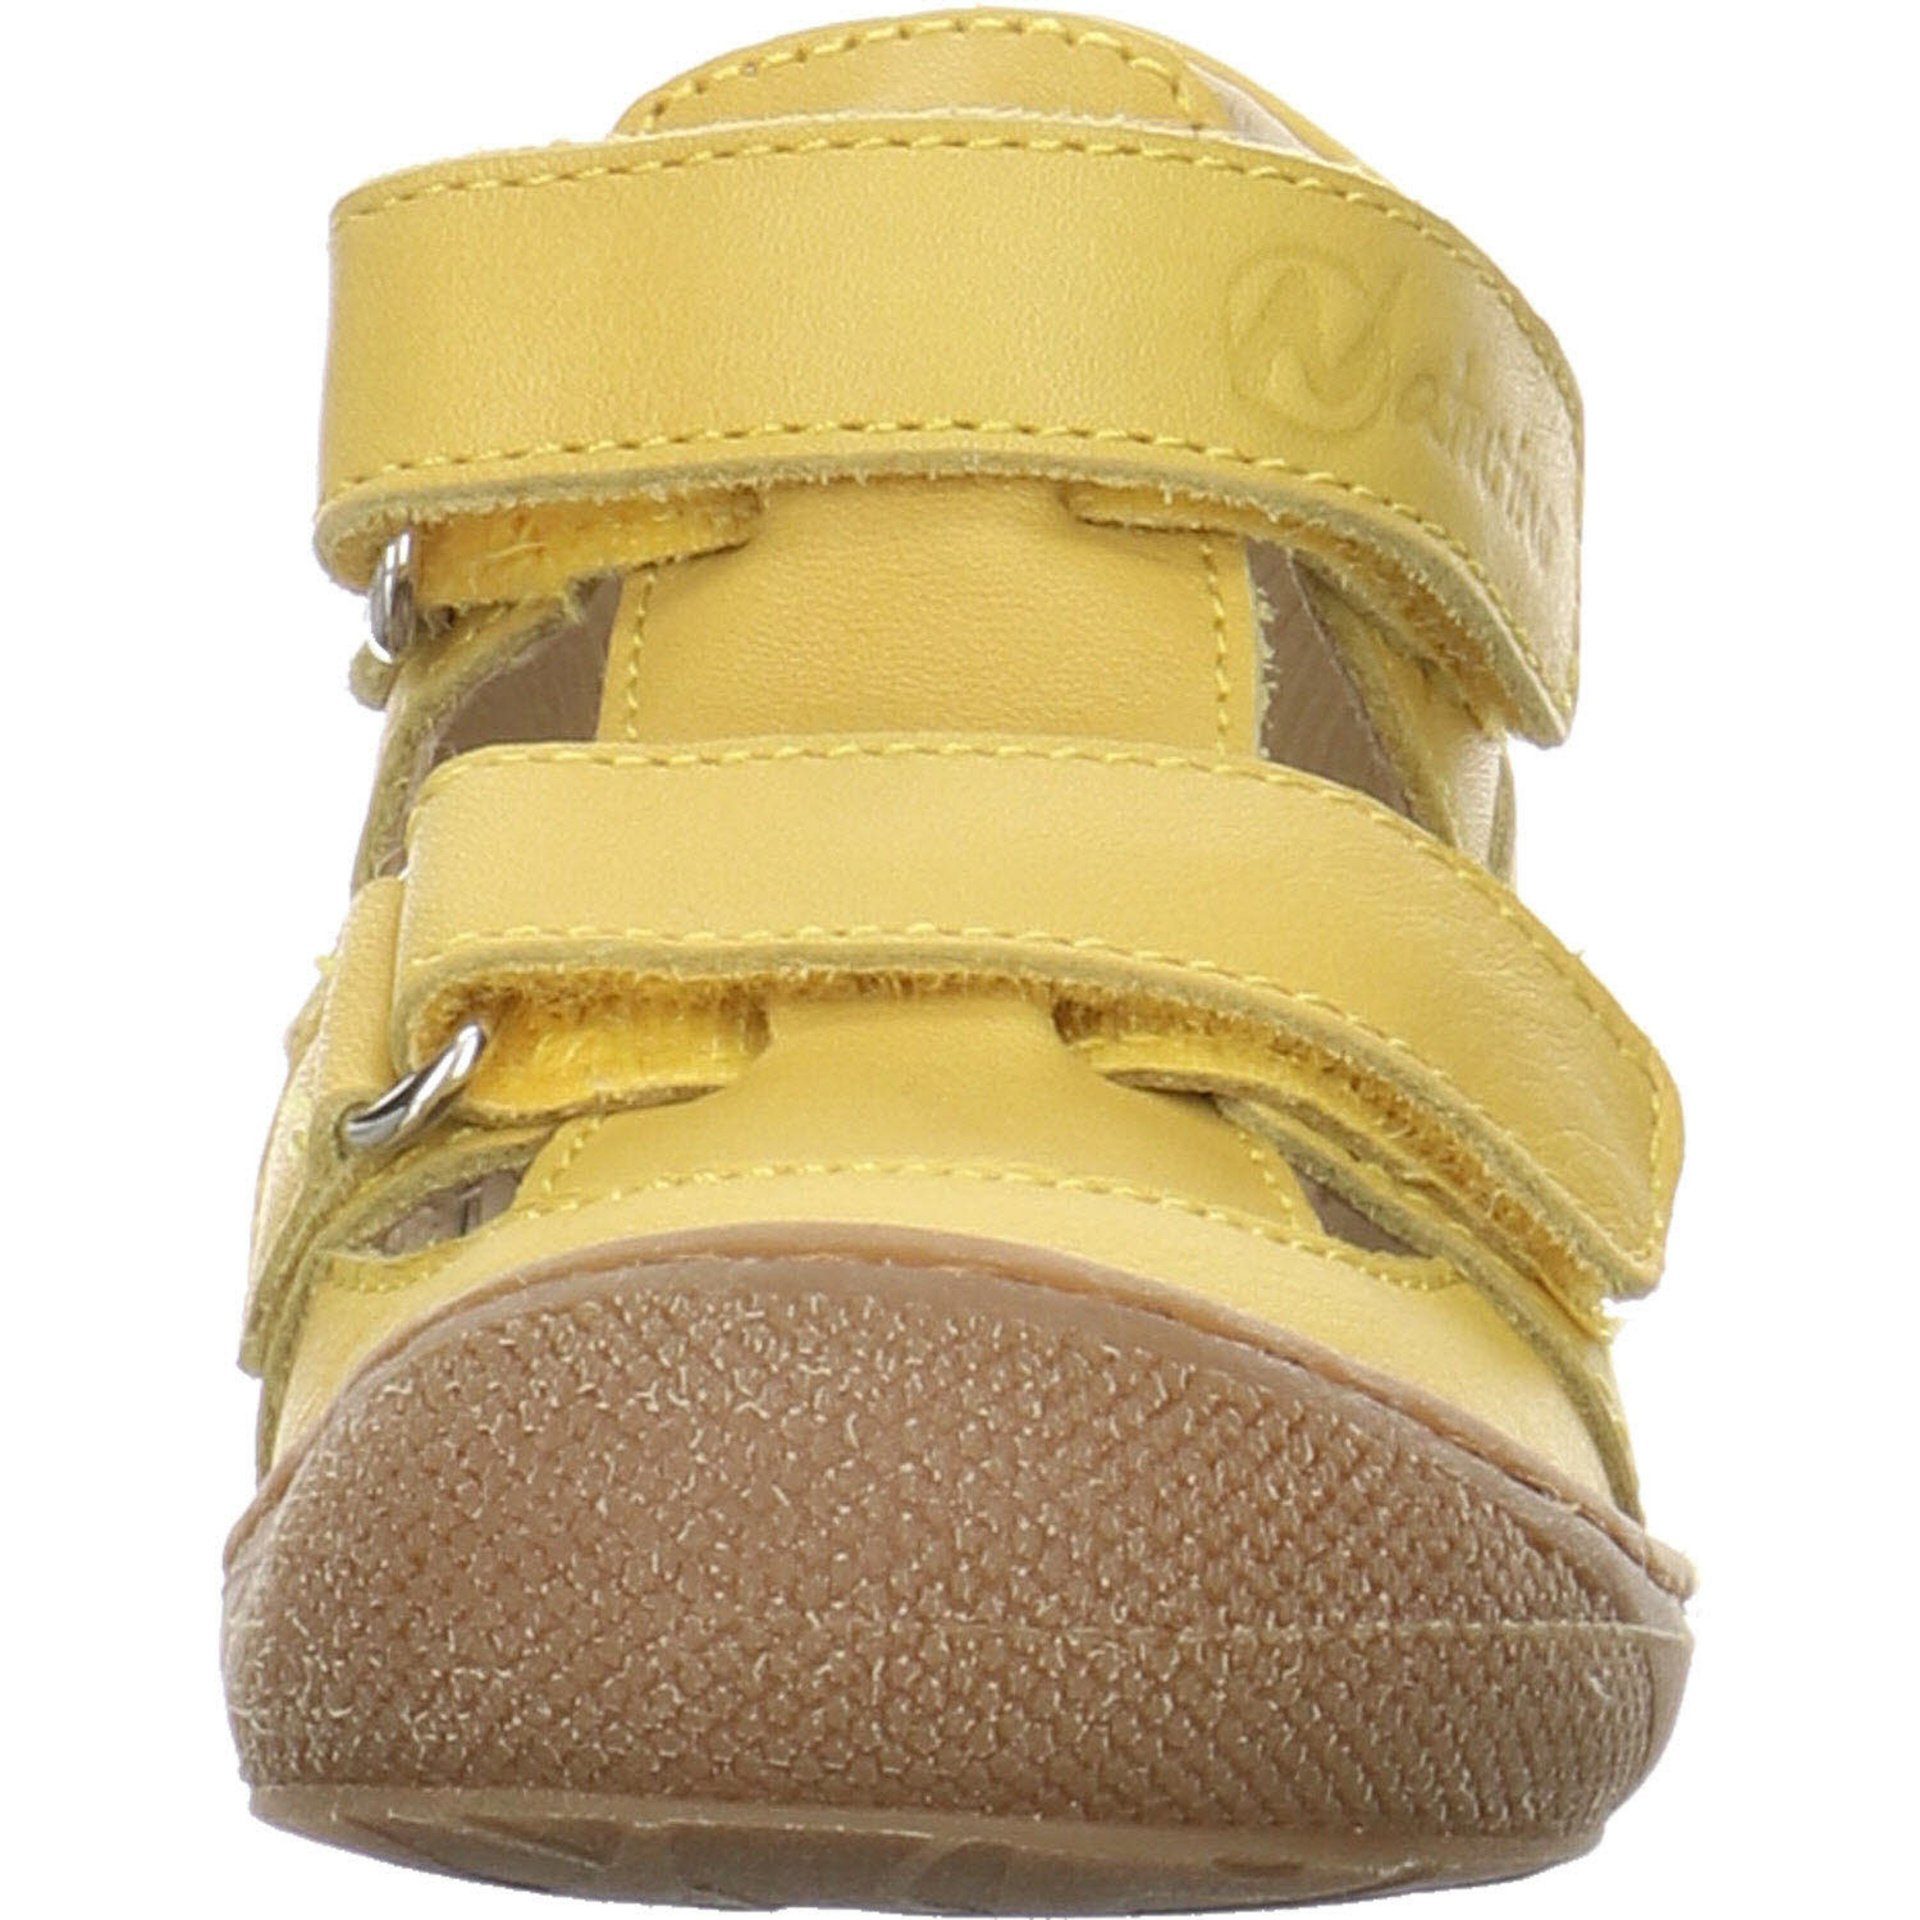 Naturino Jungen hell Minilette gelb Glattleder Puffy Sandalen Lauflernschuh Schuhe